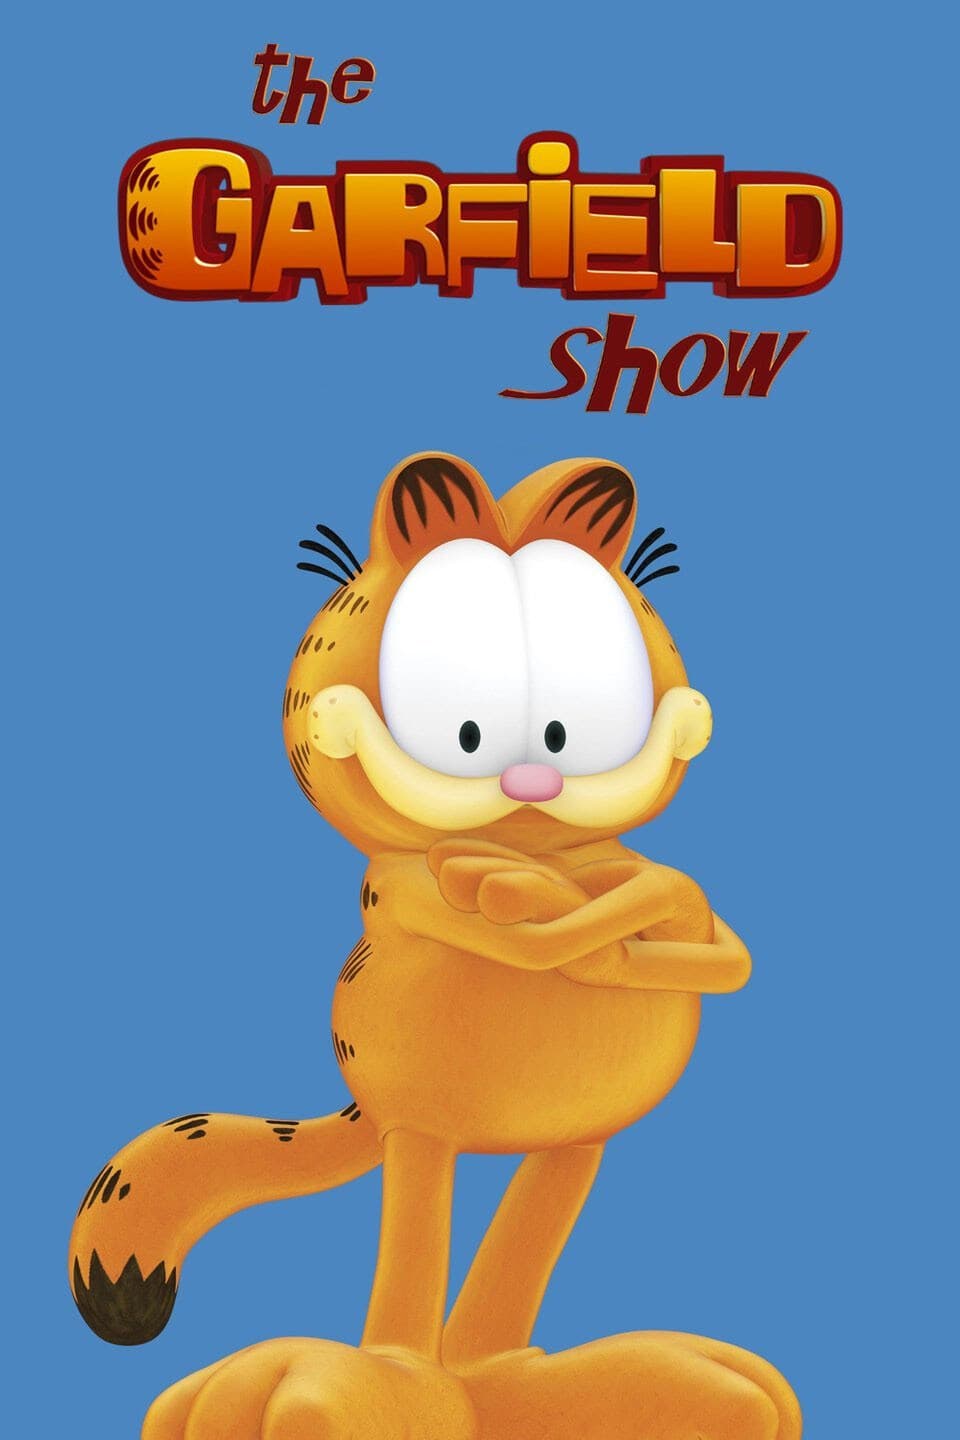 Coleção Digital Garfield e Seus Amigos Todos Episódios Completo